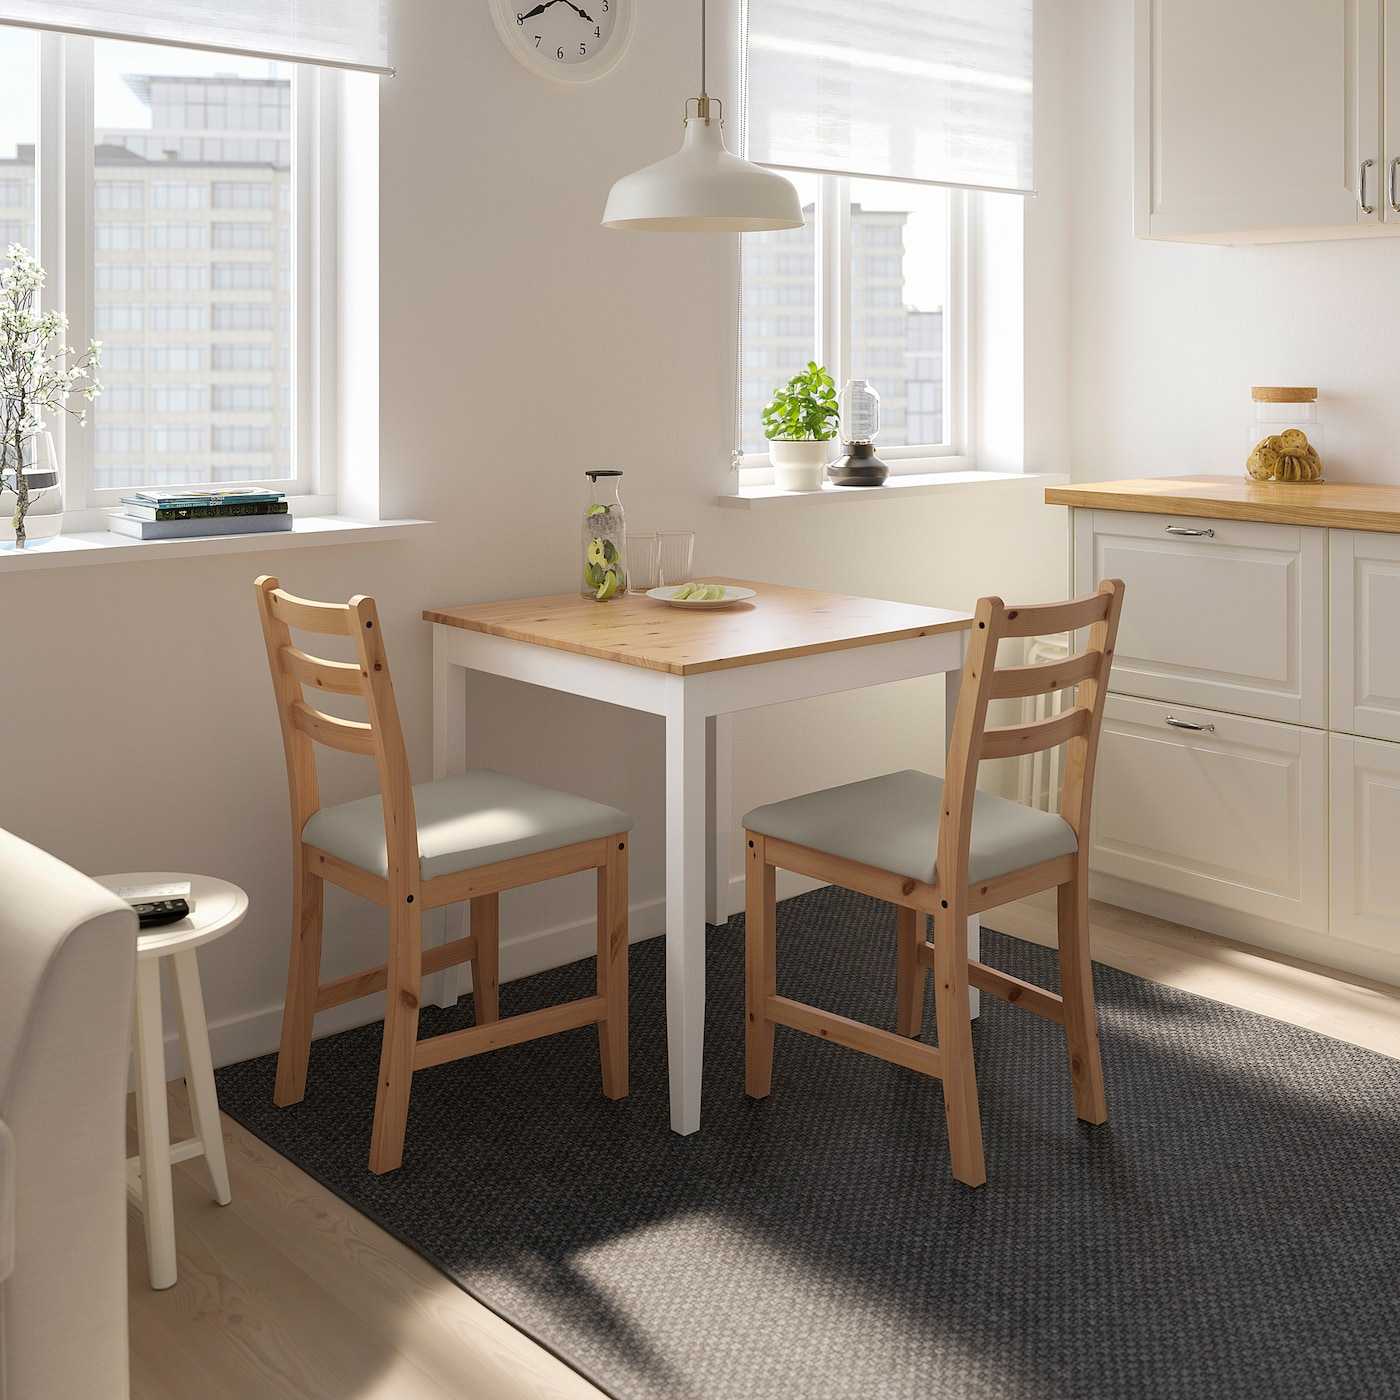 Обзор кухонных столов от икеа: 45 решений для любого интерьера